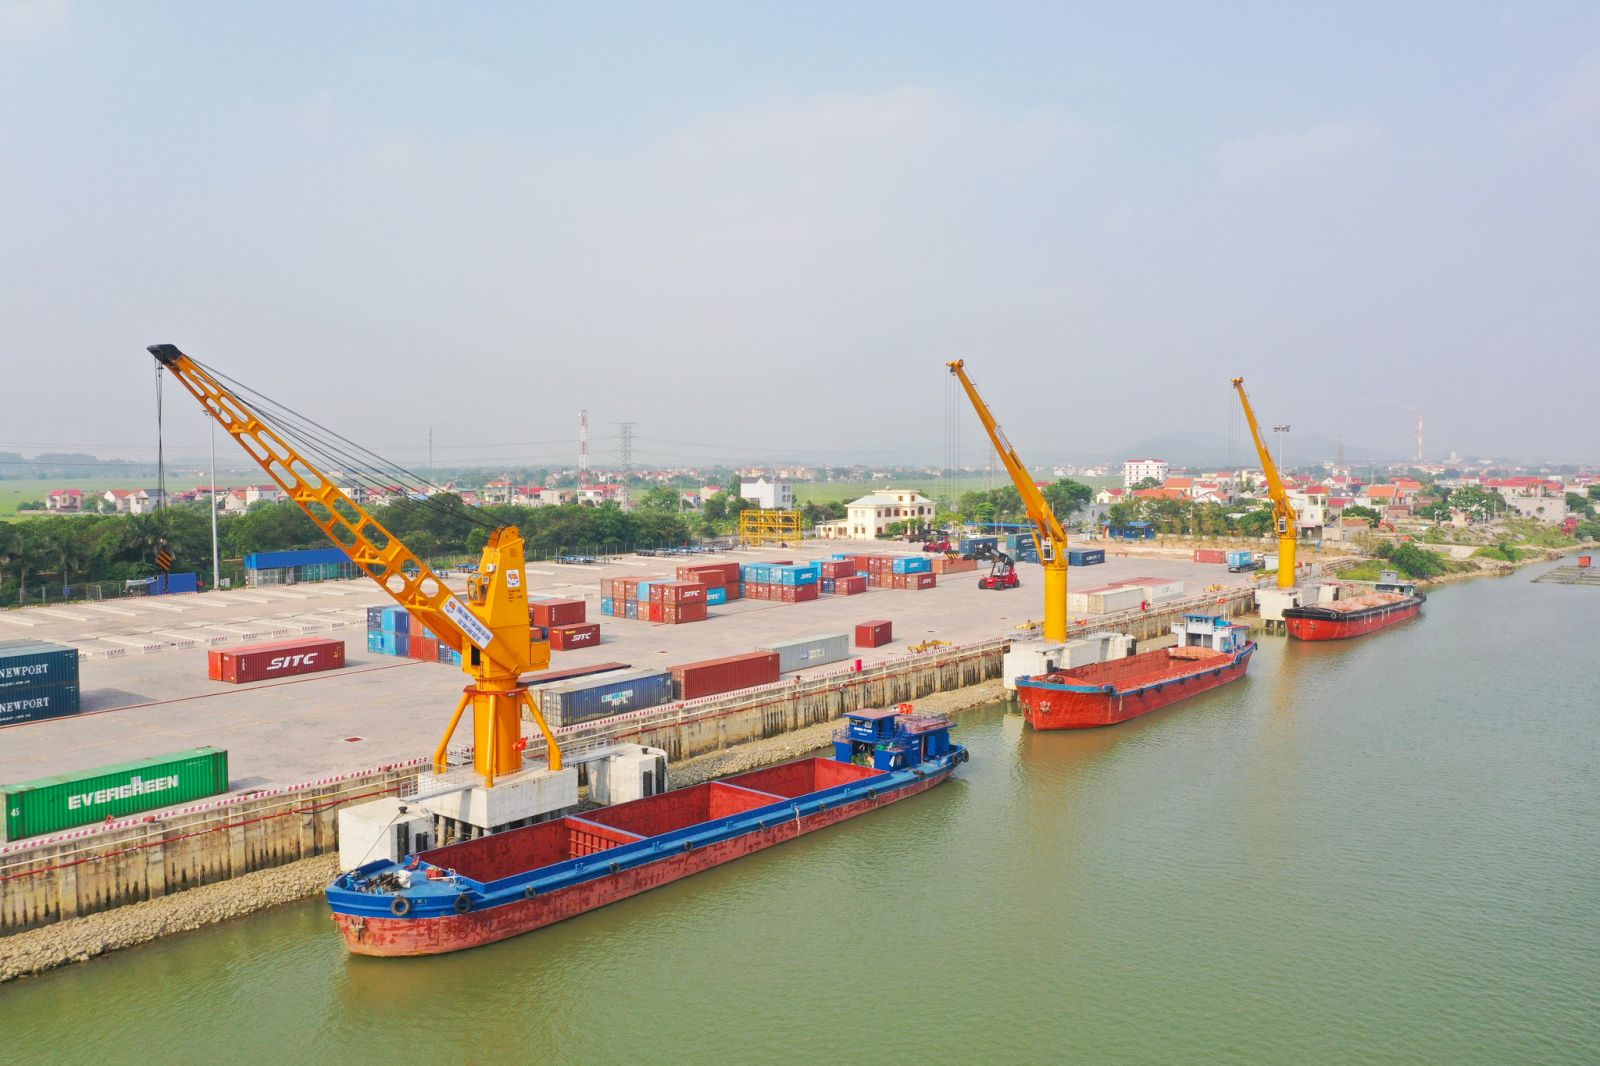 Tân Cảng Quế Võ đi vào hoạt động giúp tối ưu về logistics, xuất nhập khẩu, tạo cơ hội thu hút đầu tư mạnh mẽ hơn cho Bắc Ninh.